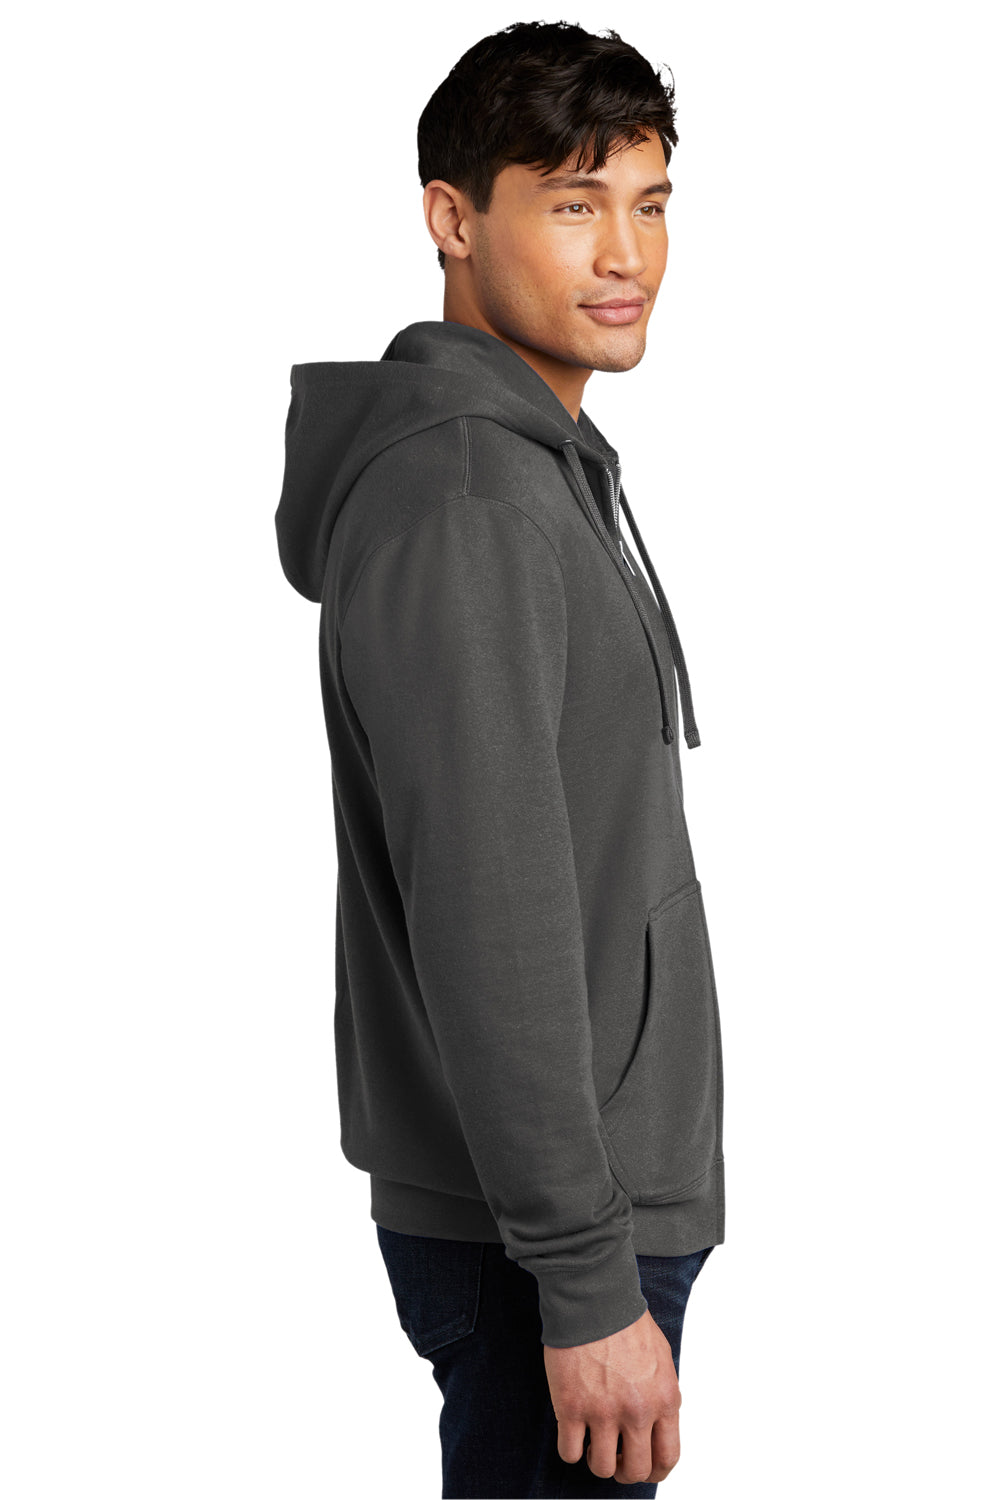 District Mens Very Important Fleece Full Zip Hooded Sweatshirt Hoodie Charcoal Grey Side